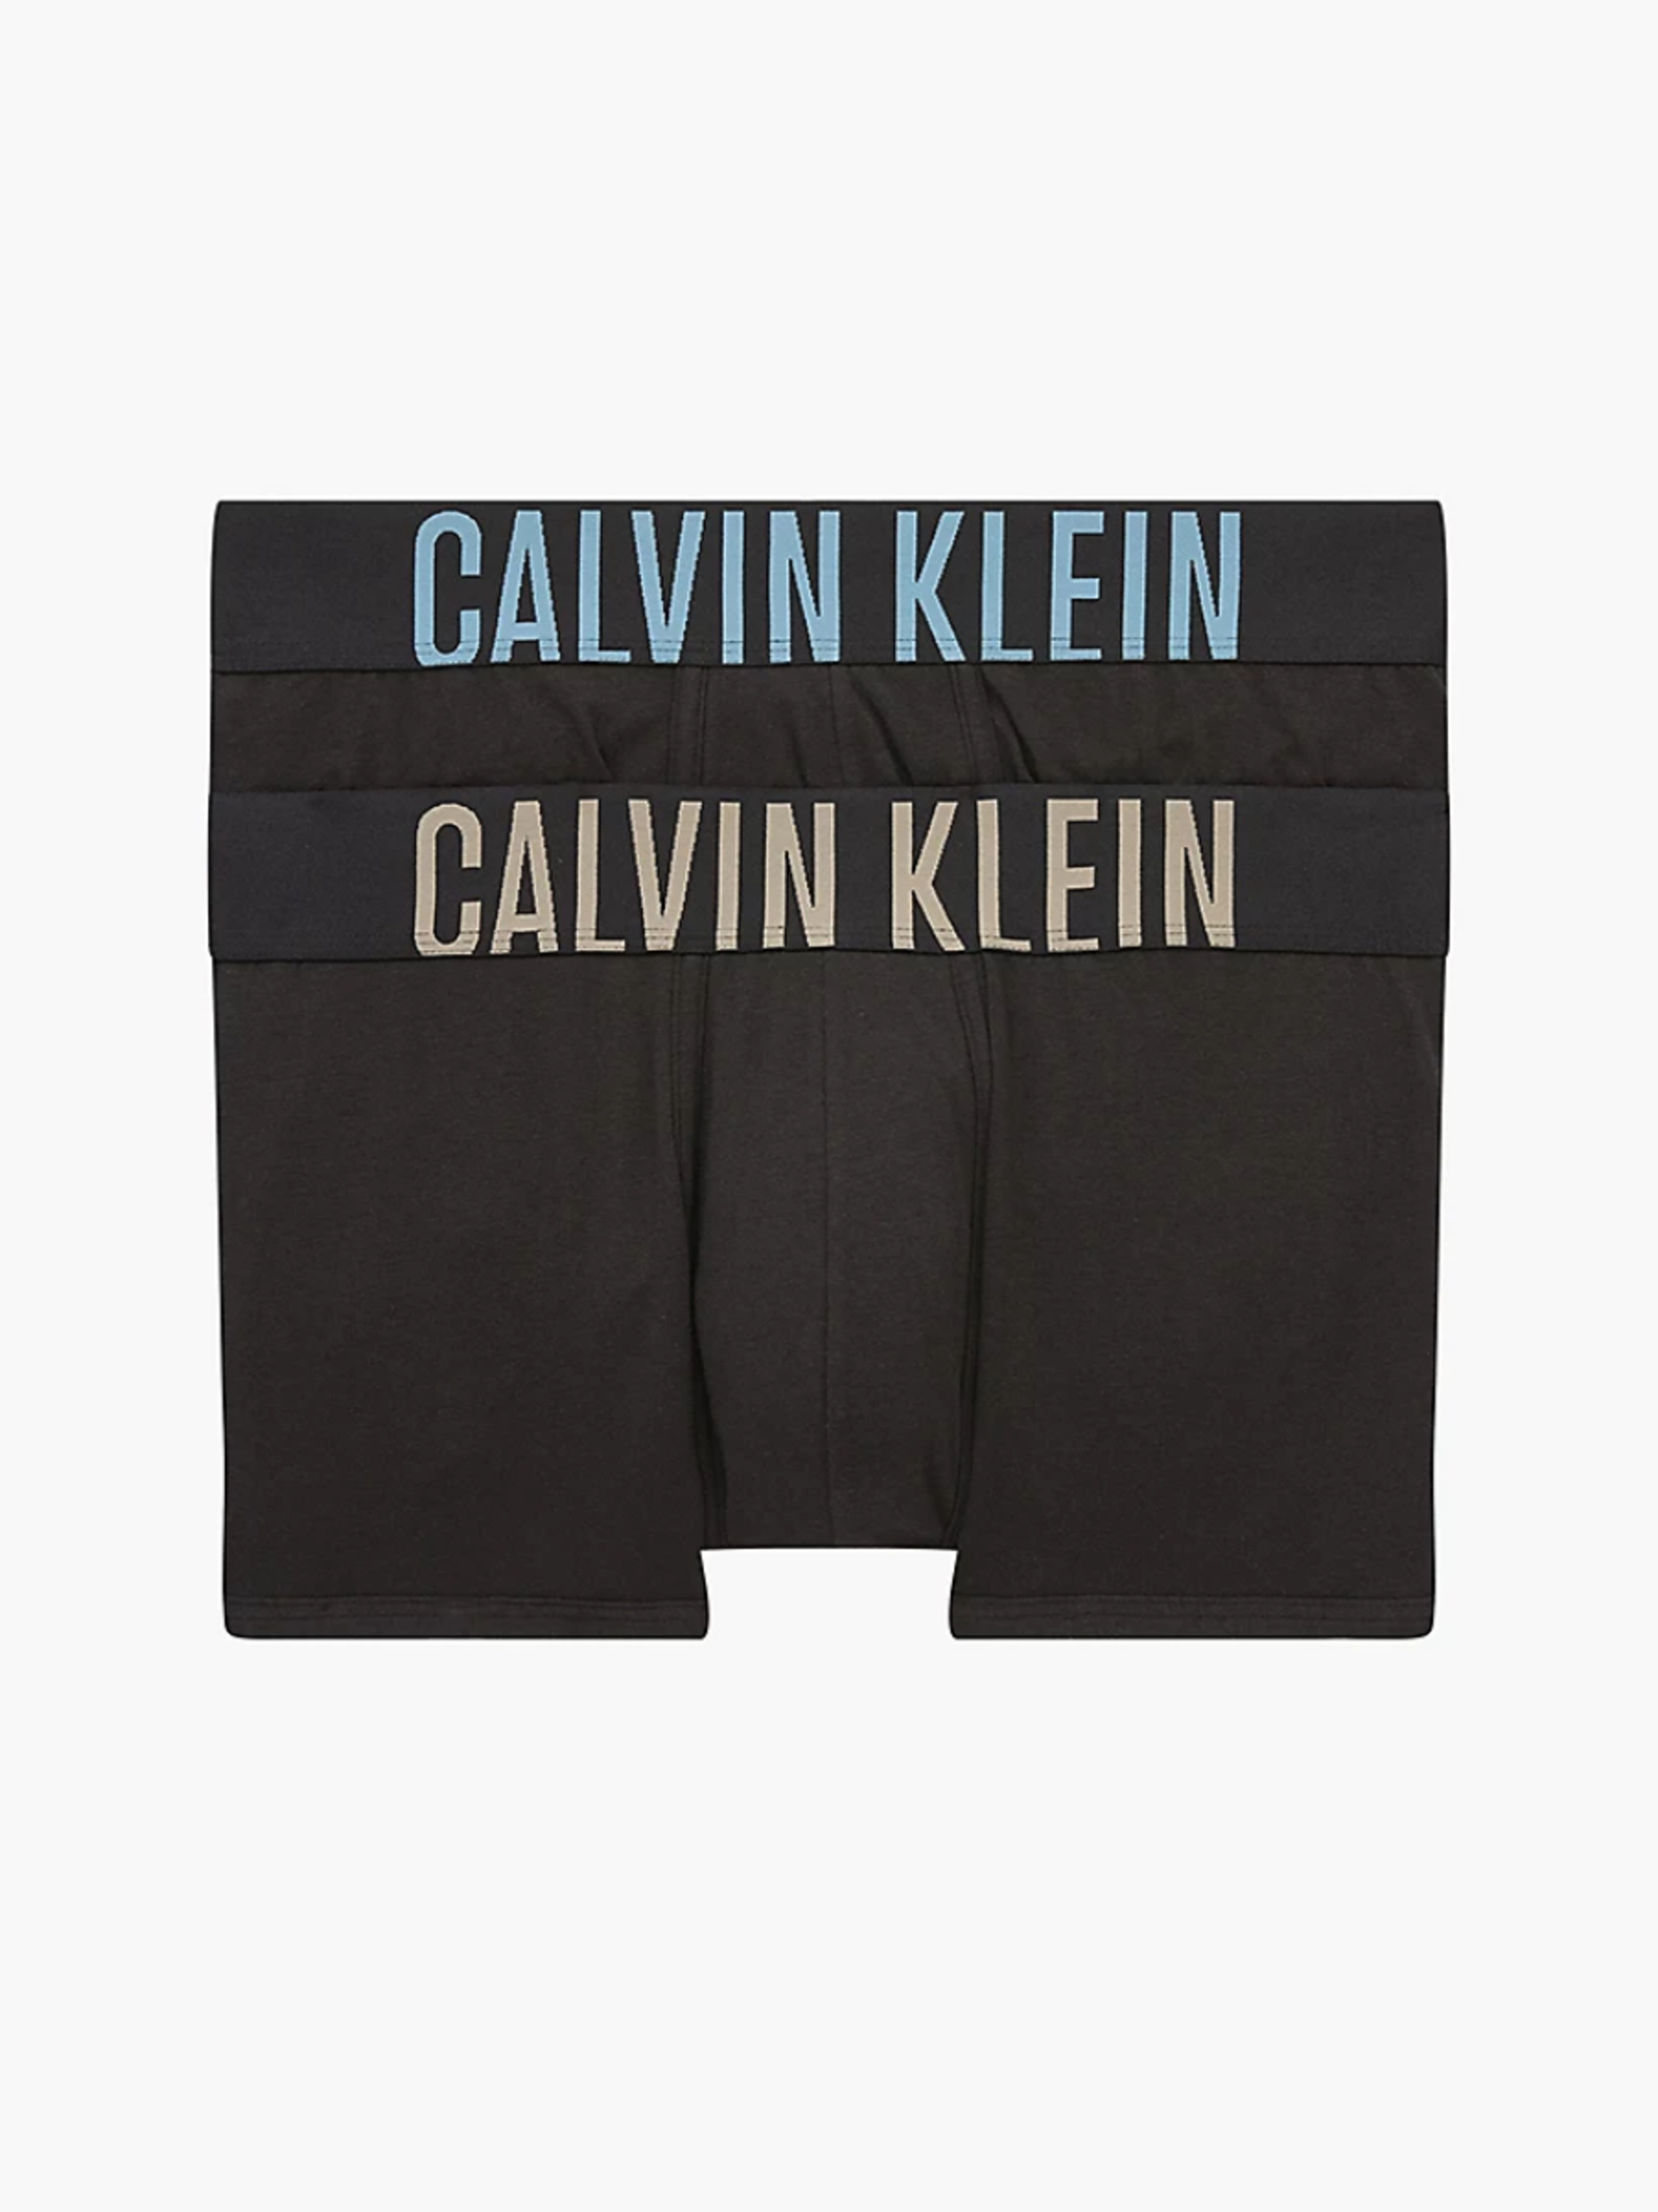 Calvin Klein pánské černé boxerky 2 pack - XL (6HF)